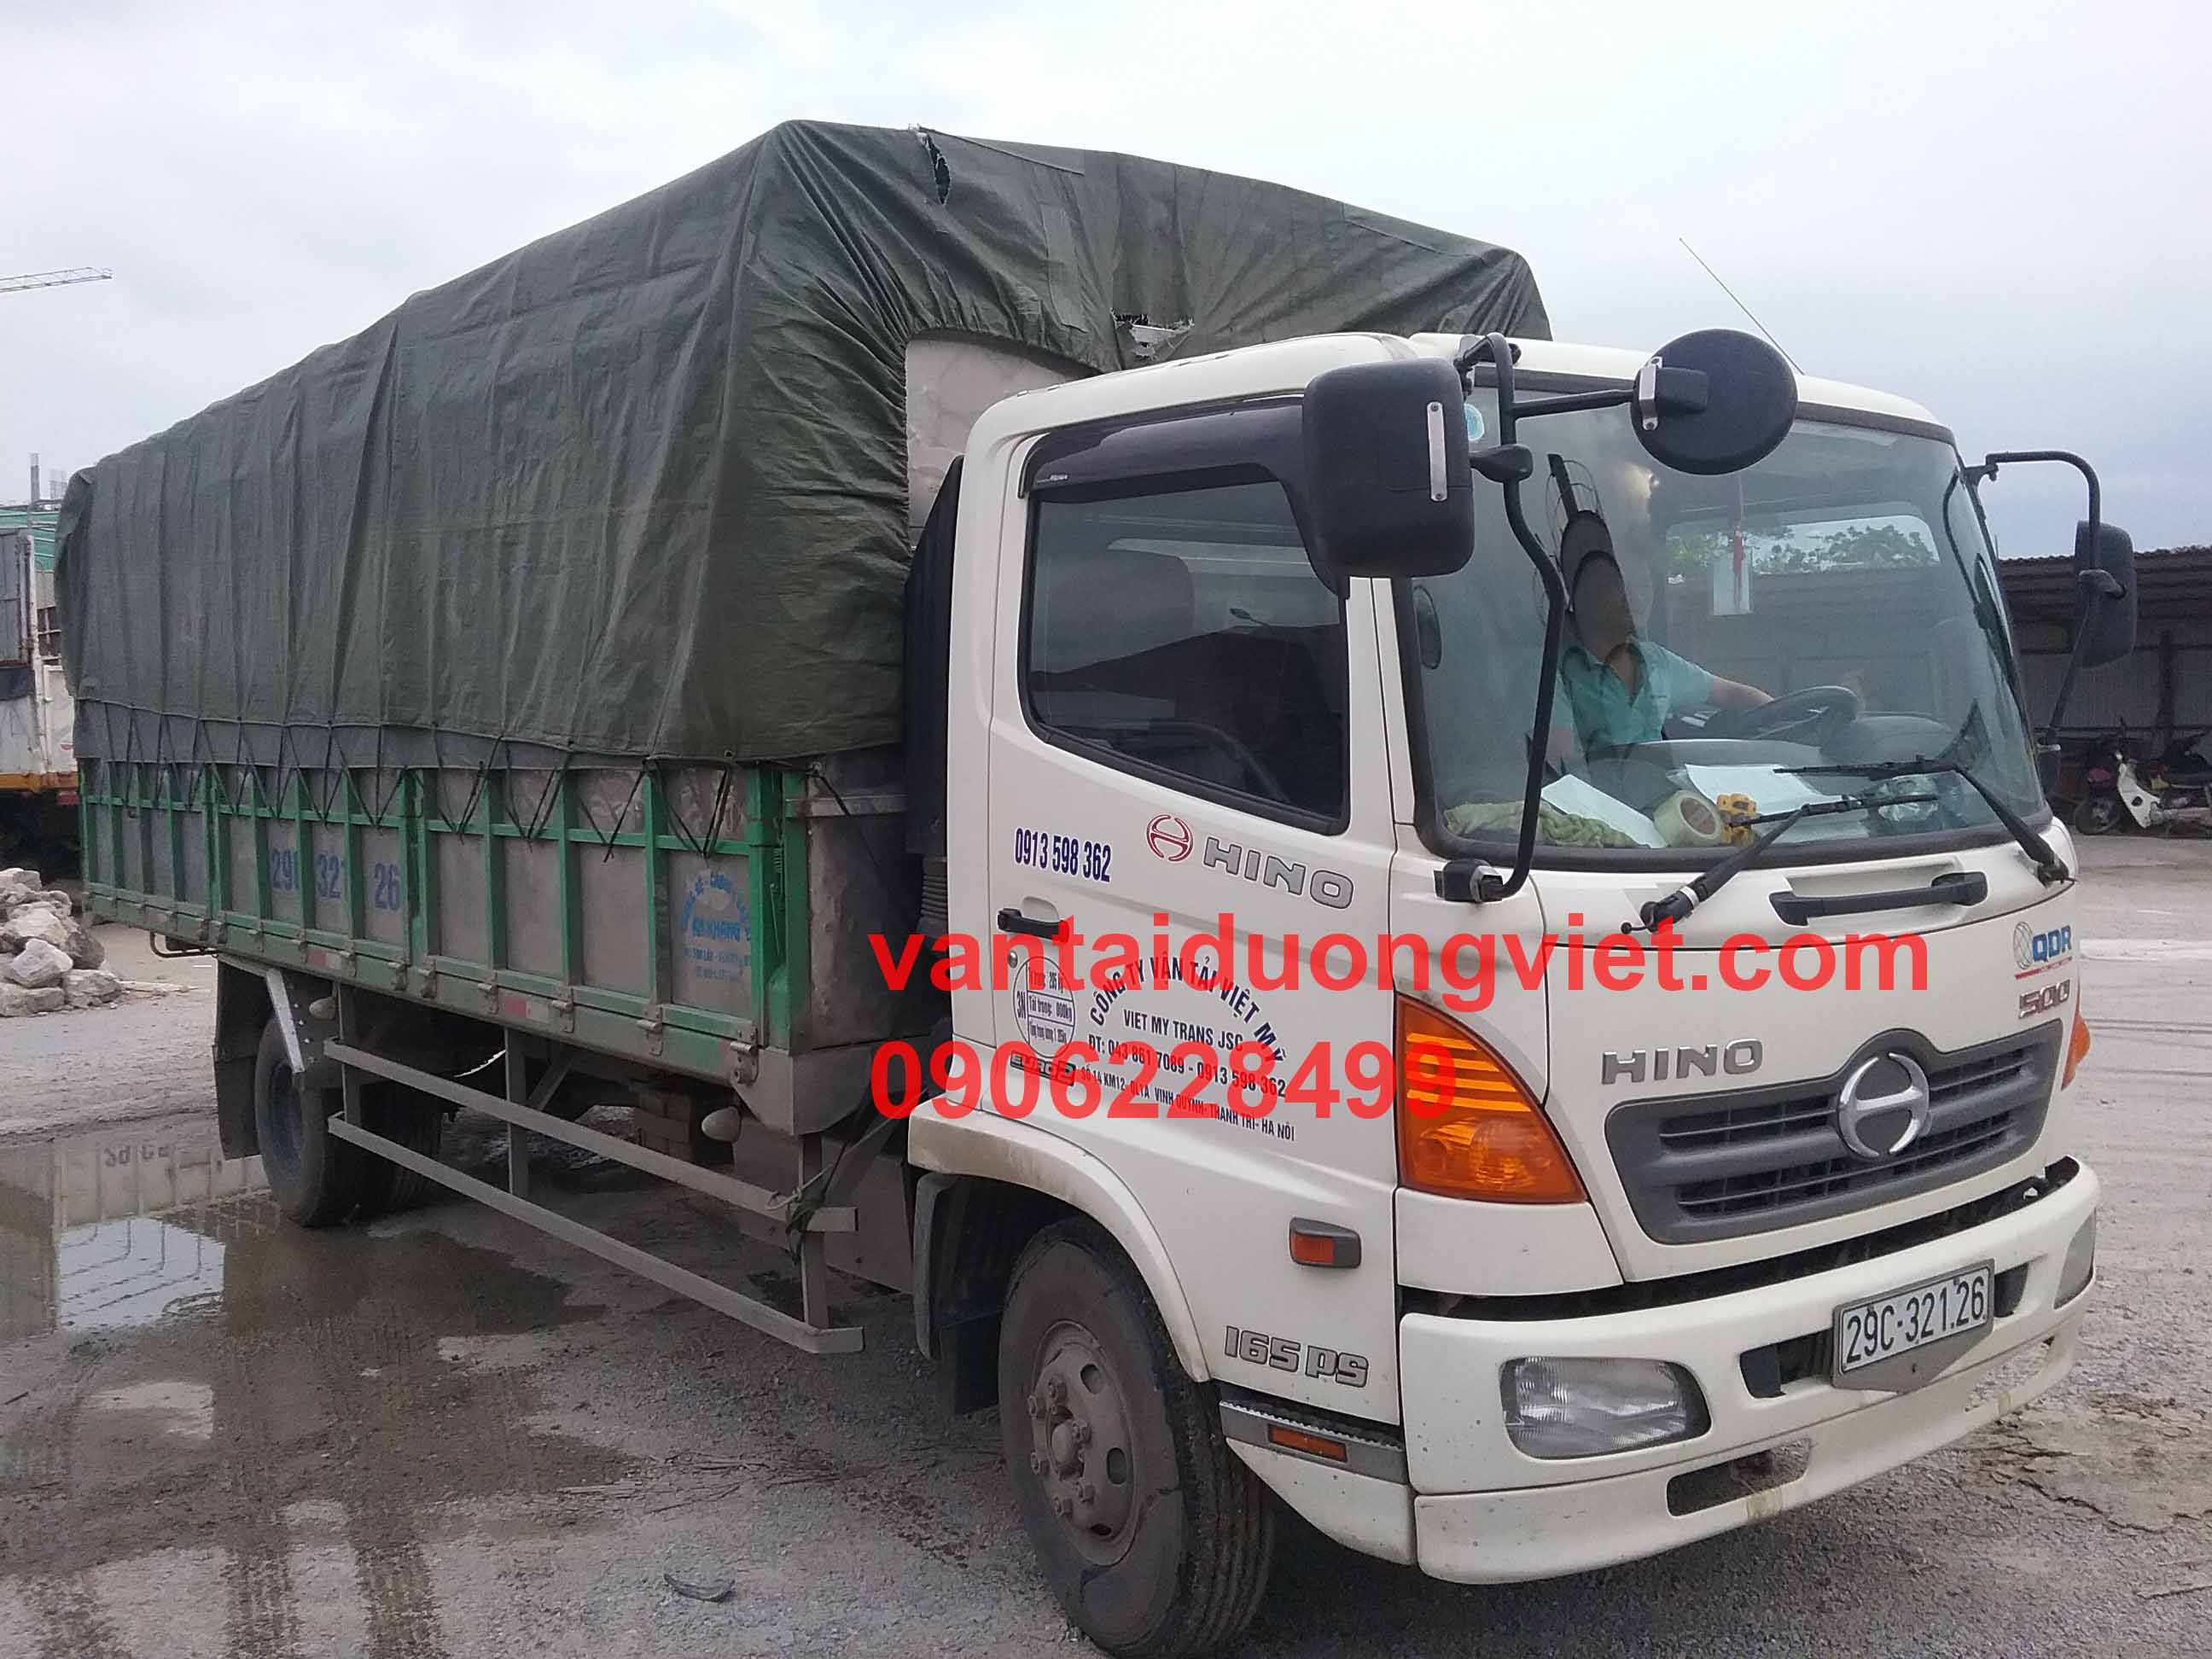  Cho thuê xe tải tại Thành phố Móng Cái Quảng Ninh, thue xe tai - thue xe tai 5 tan cho thue xe tai 5 tan - dich vu thue xe tai 5 tan,  